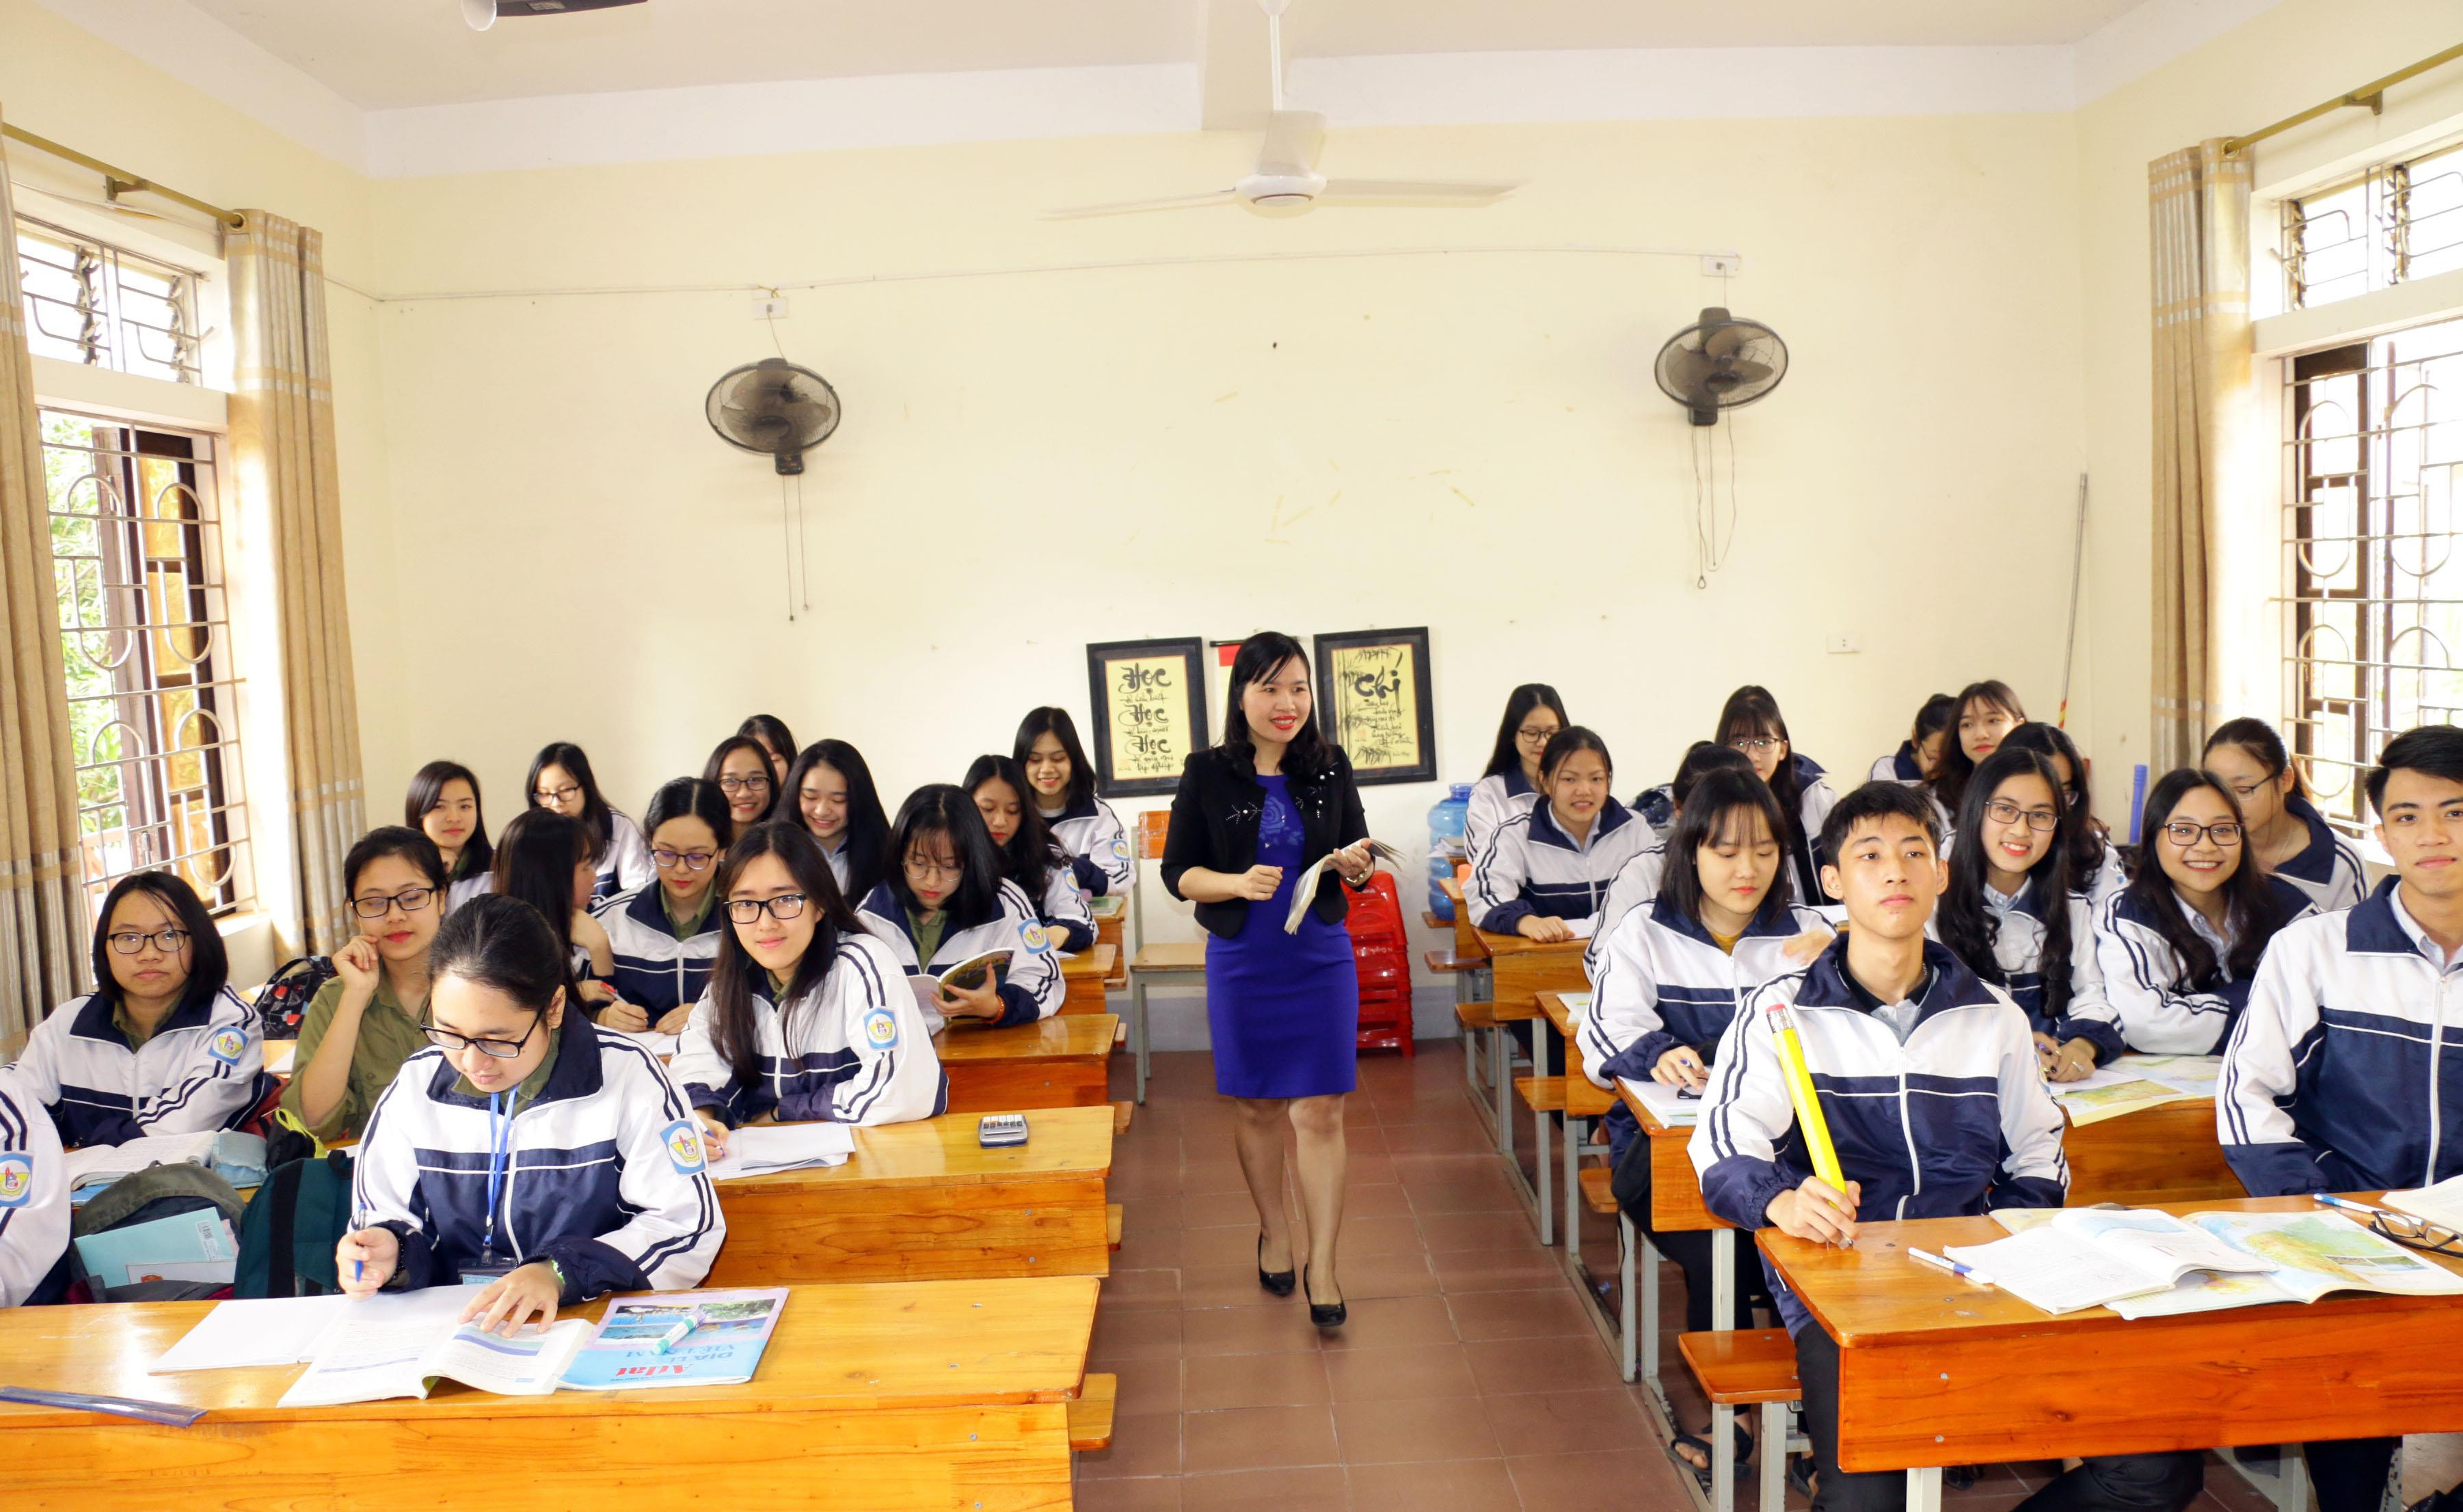 Giờ học của học sinh Trường THPT chuyên Phan Bội Châu. Ảnh: Mỹ Hà